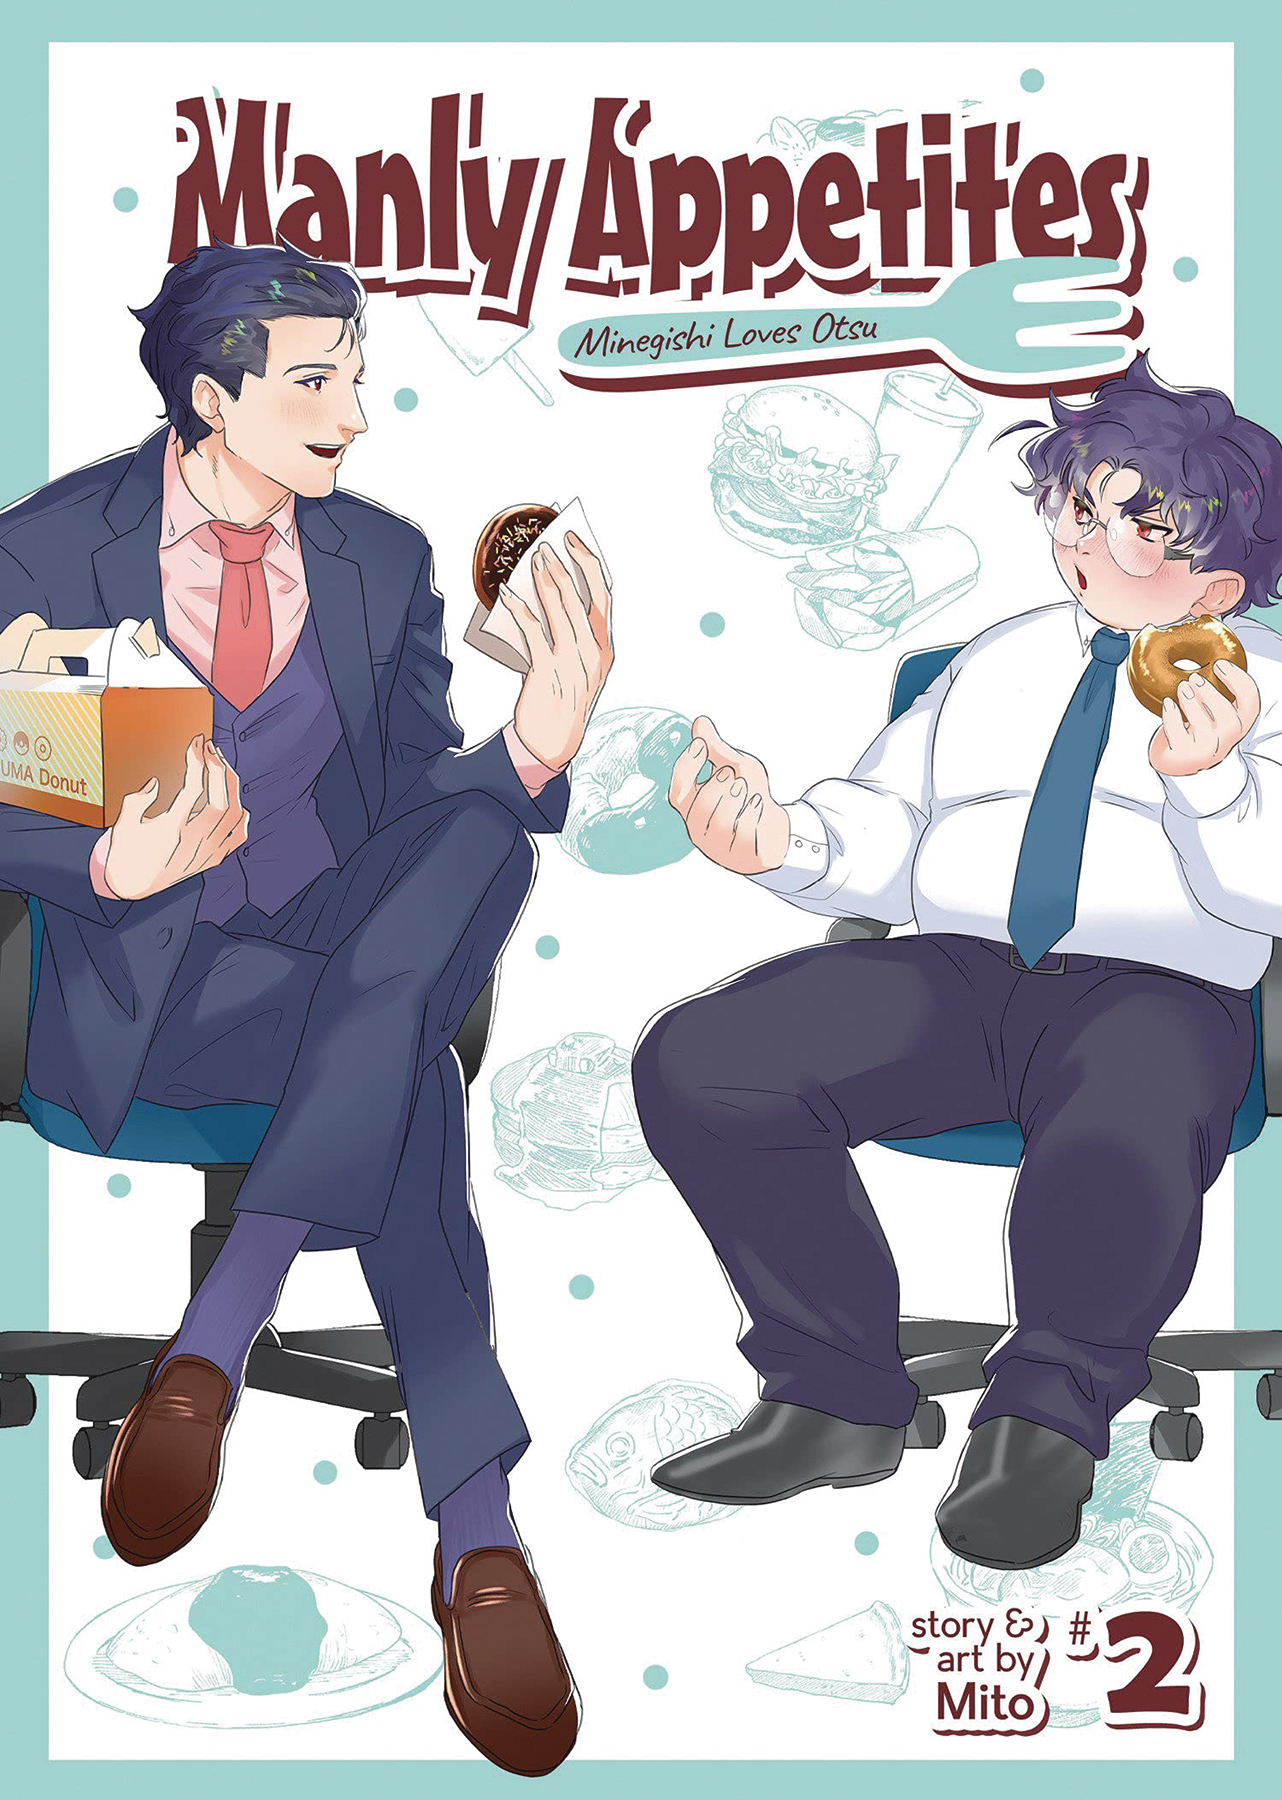 Manly Appetites Minegishi Loves Otsu Manga Volume 3 (Mature)